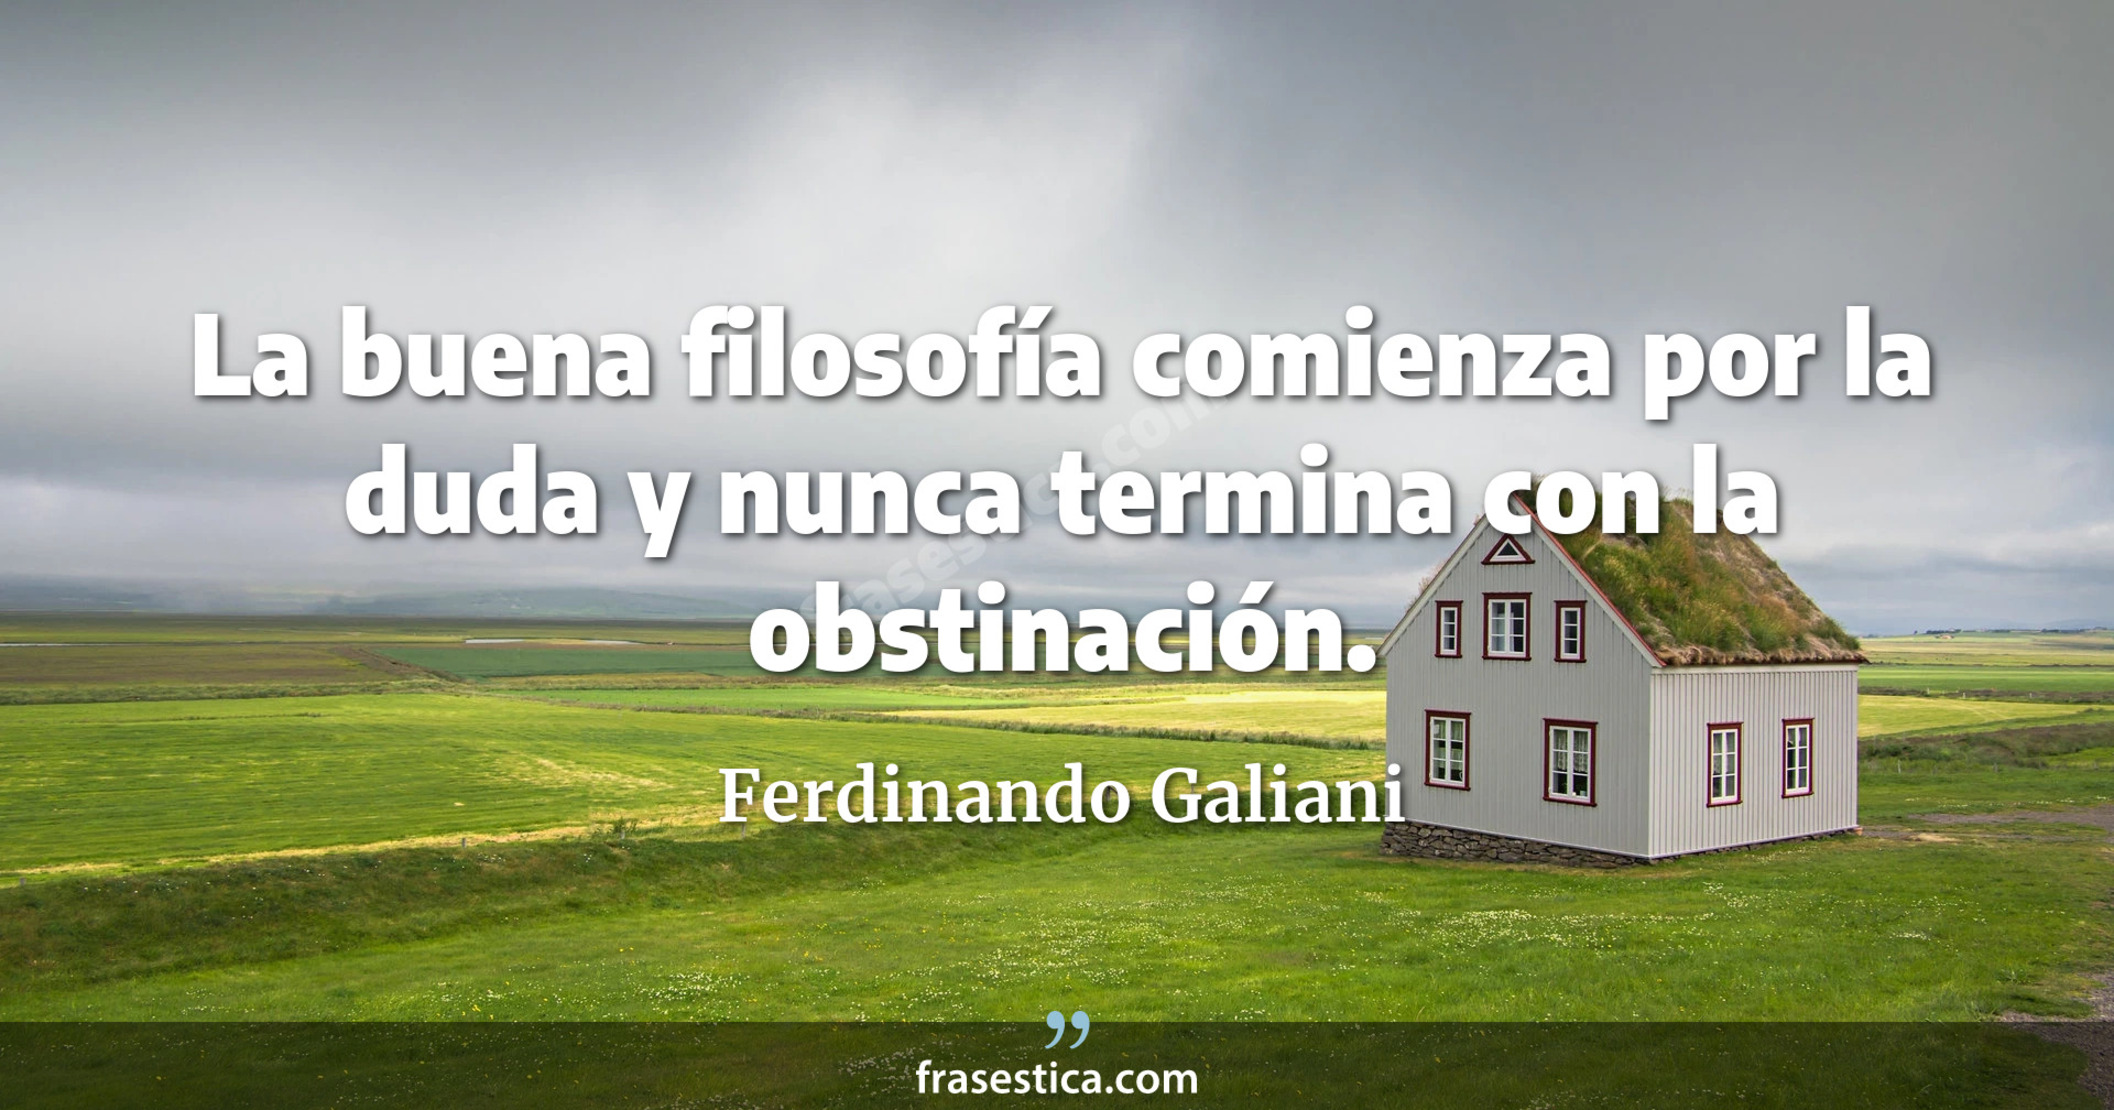 La buena filosofía comienza por la duda y nunca termina con la obstinación. - Ferdinando Galiani